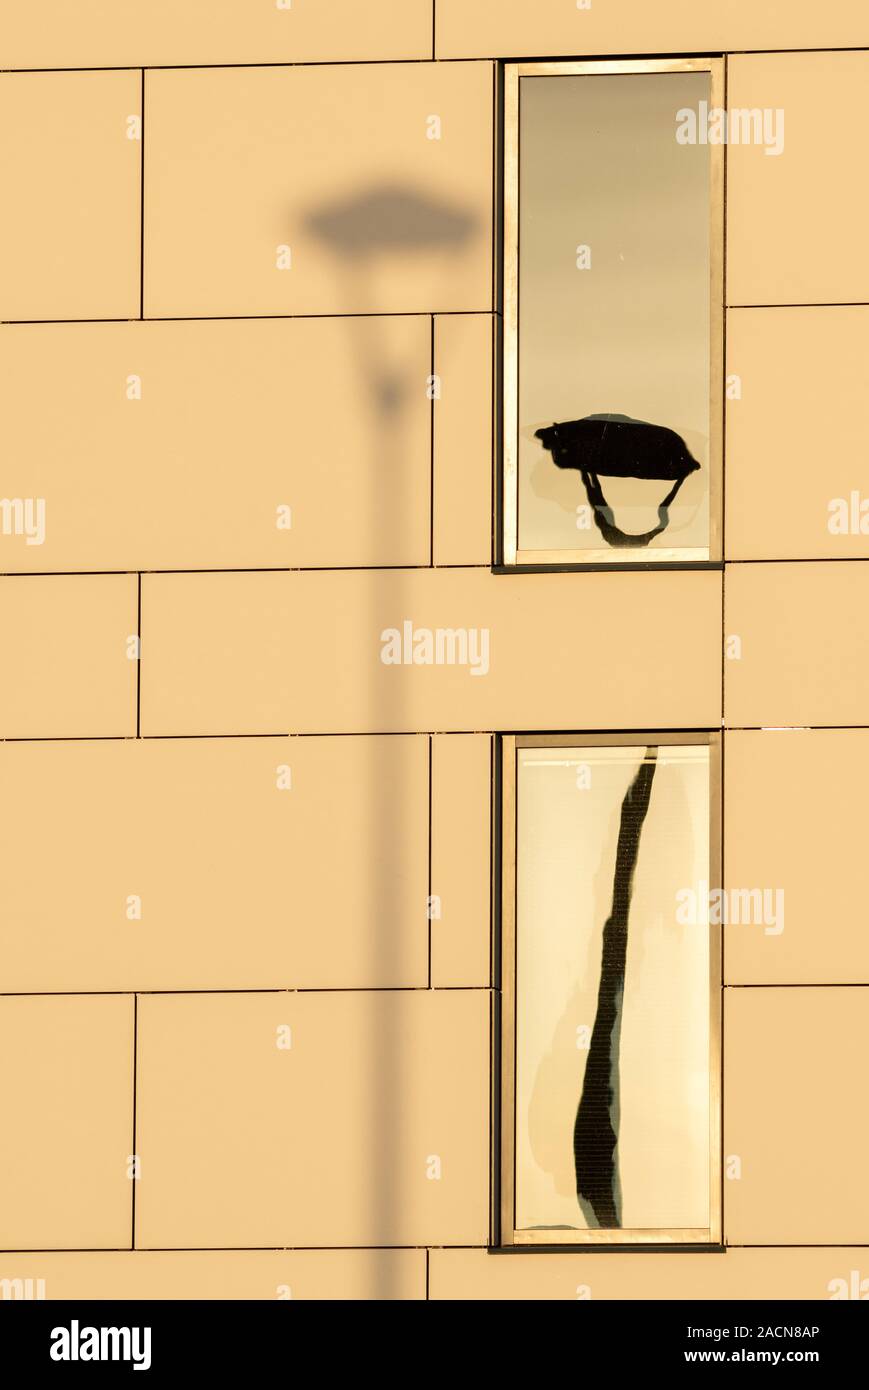 Lampada posta in ombra sul muro con il suo riflesso in una finestra come creativa composizione artistica astratta. Foto Stock